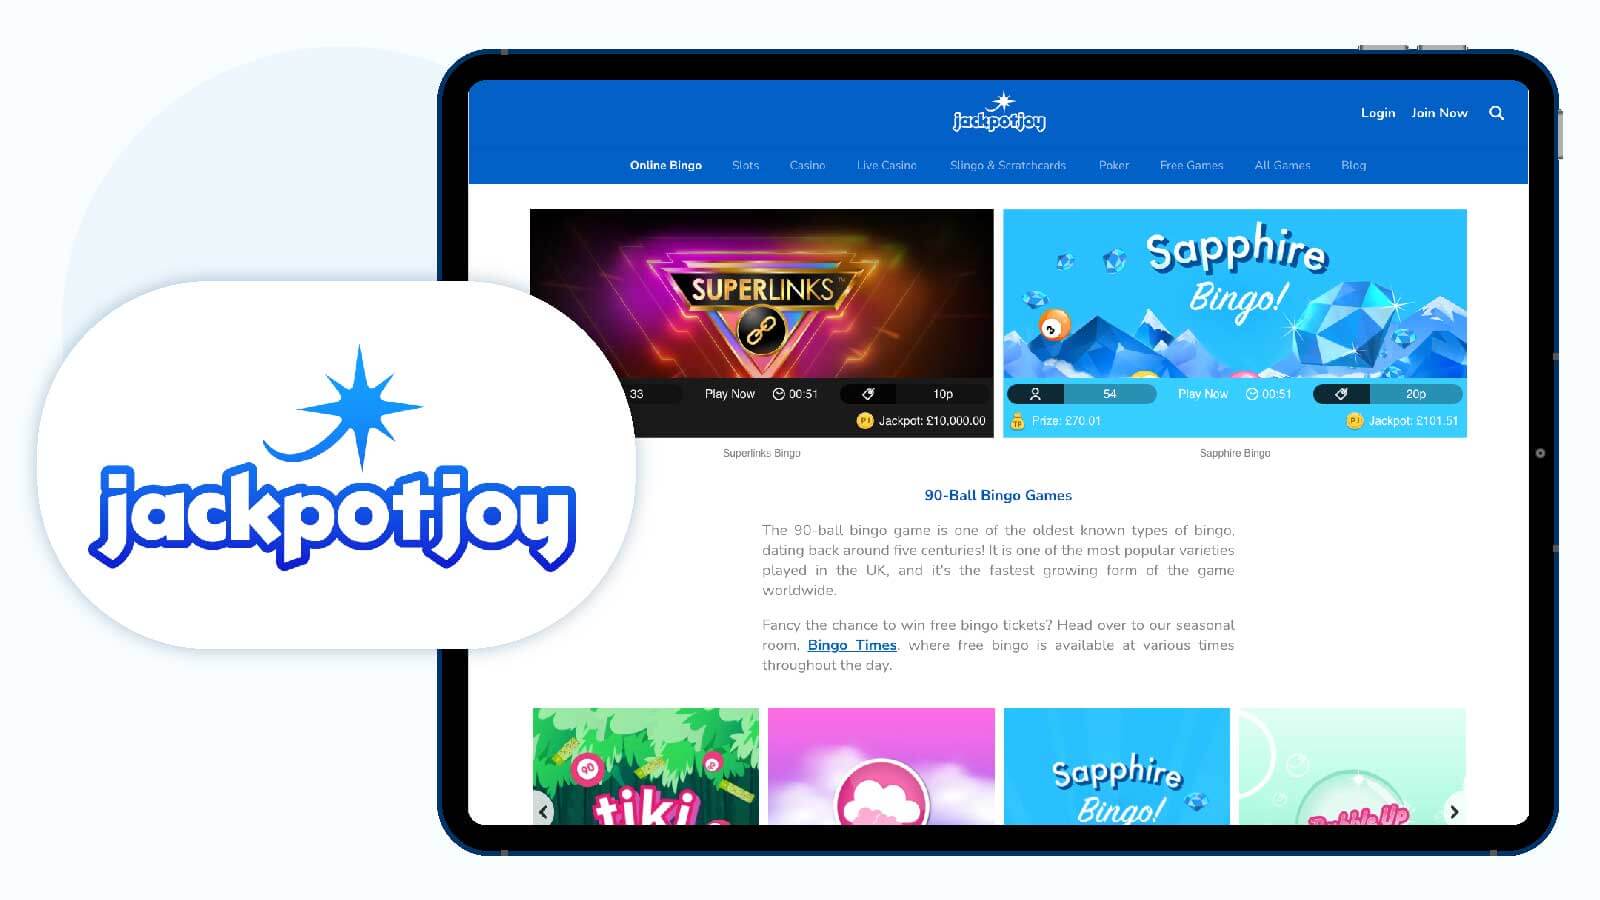 Jackpotjoy Casino – Best New Bingo Site